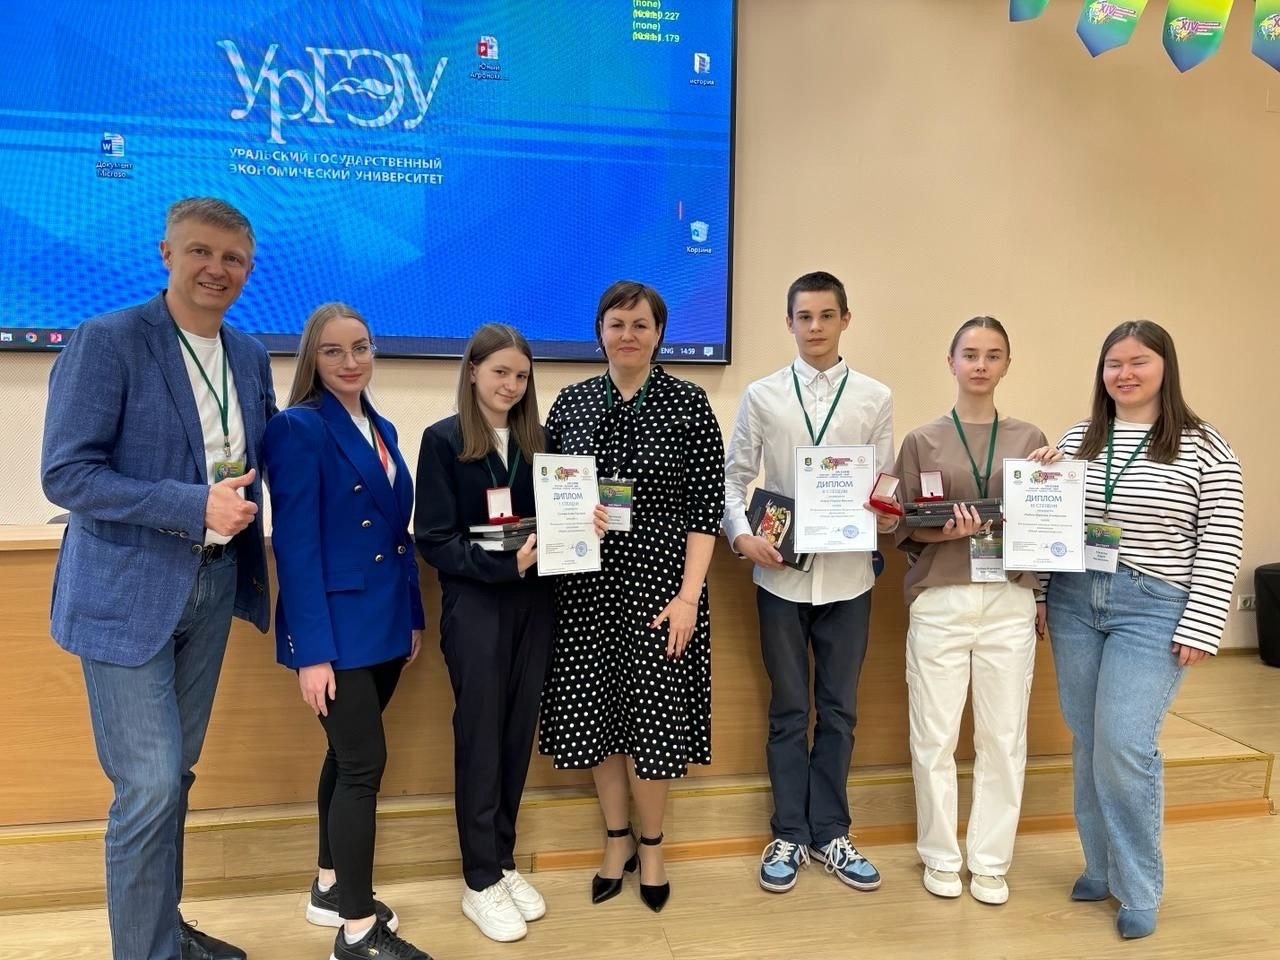 Школьники на Евразийском экономическом форуму молодежи защитили свои проекты